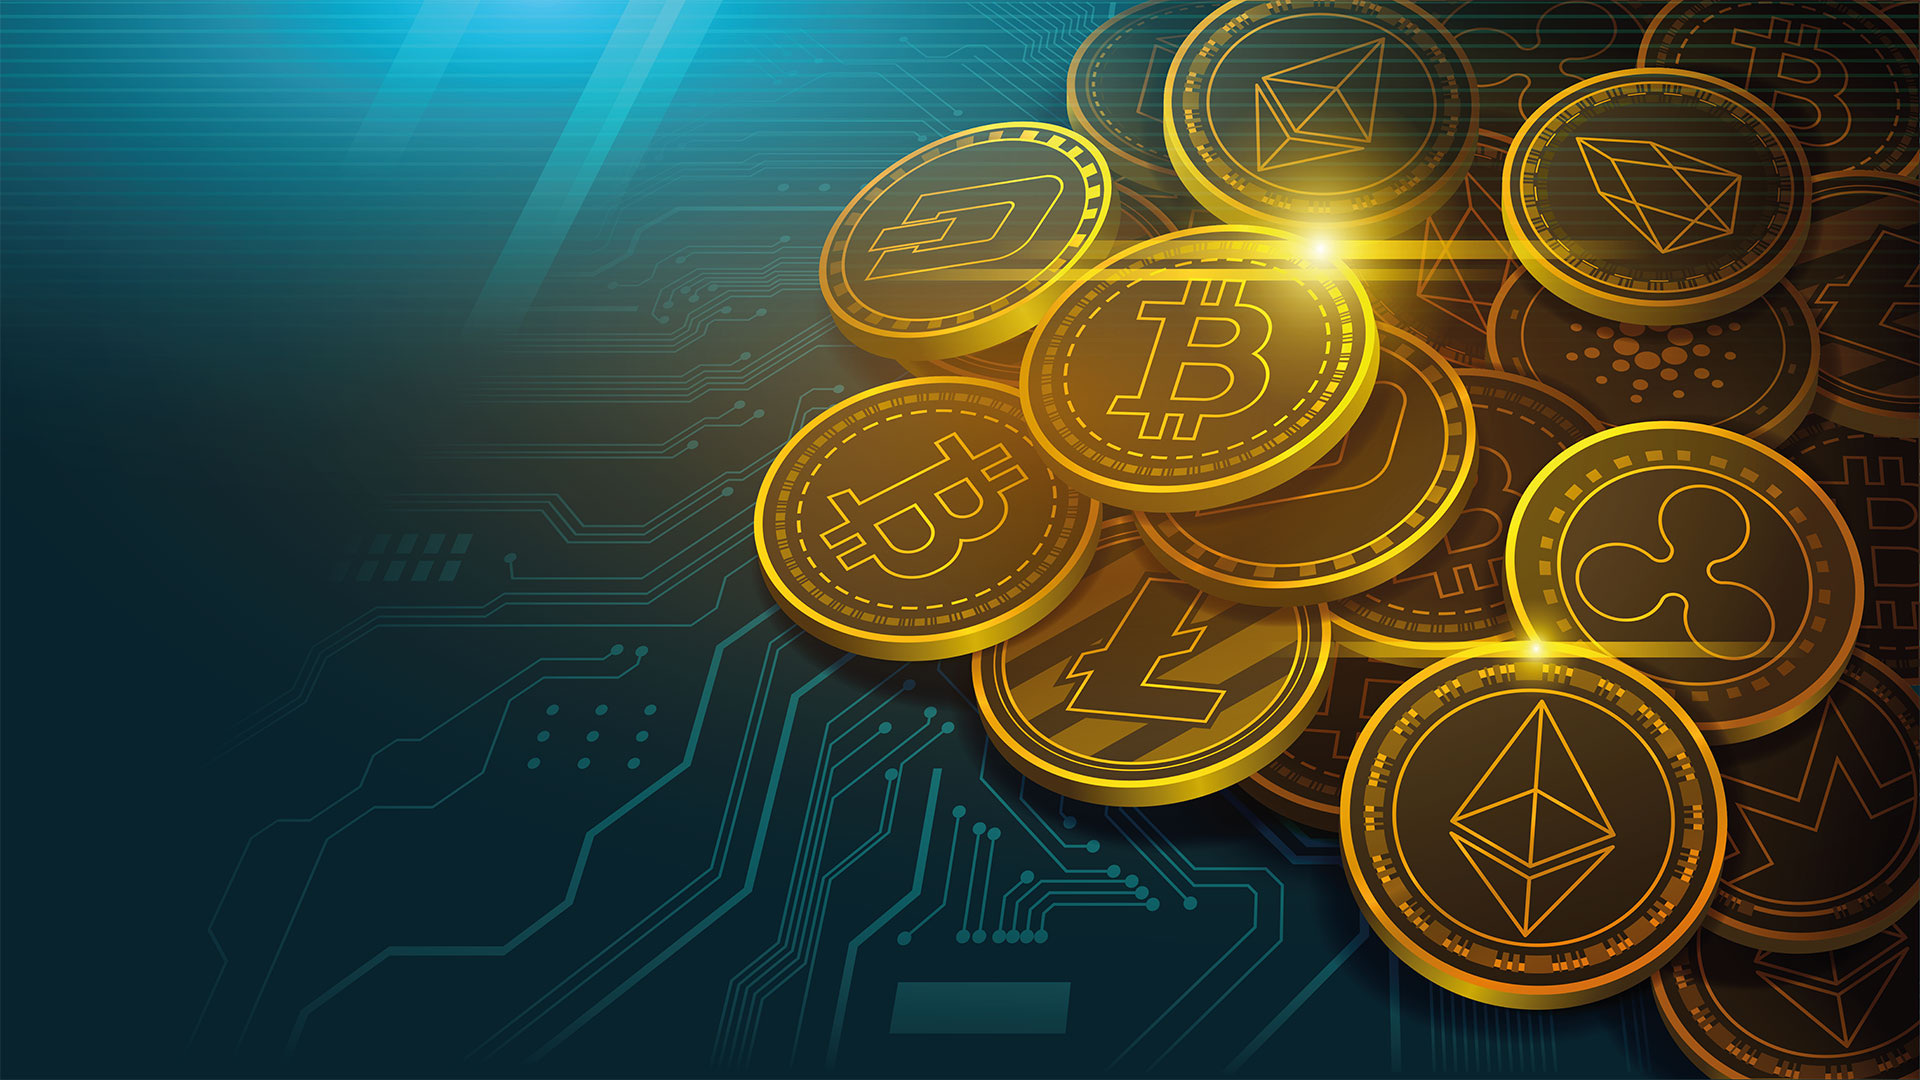 wie viel geld ist in bitcoin investiert indirekt in kryptowährung investieren